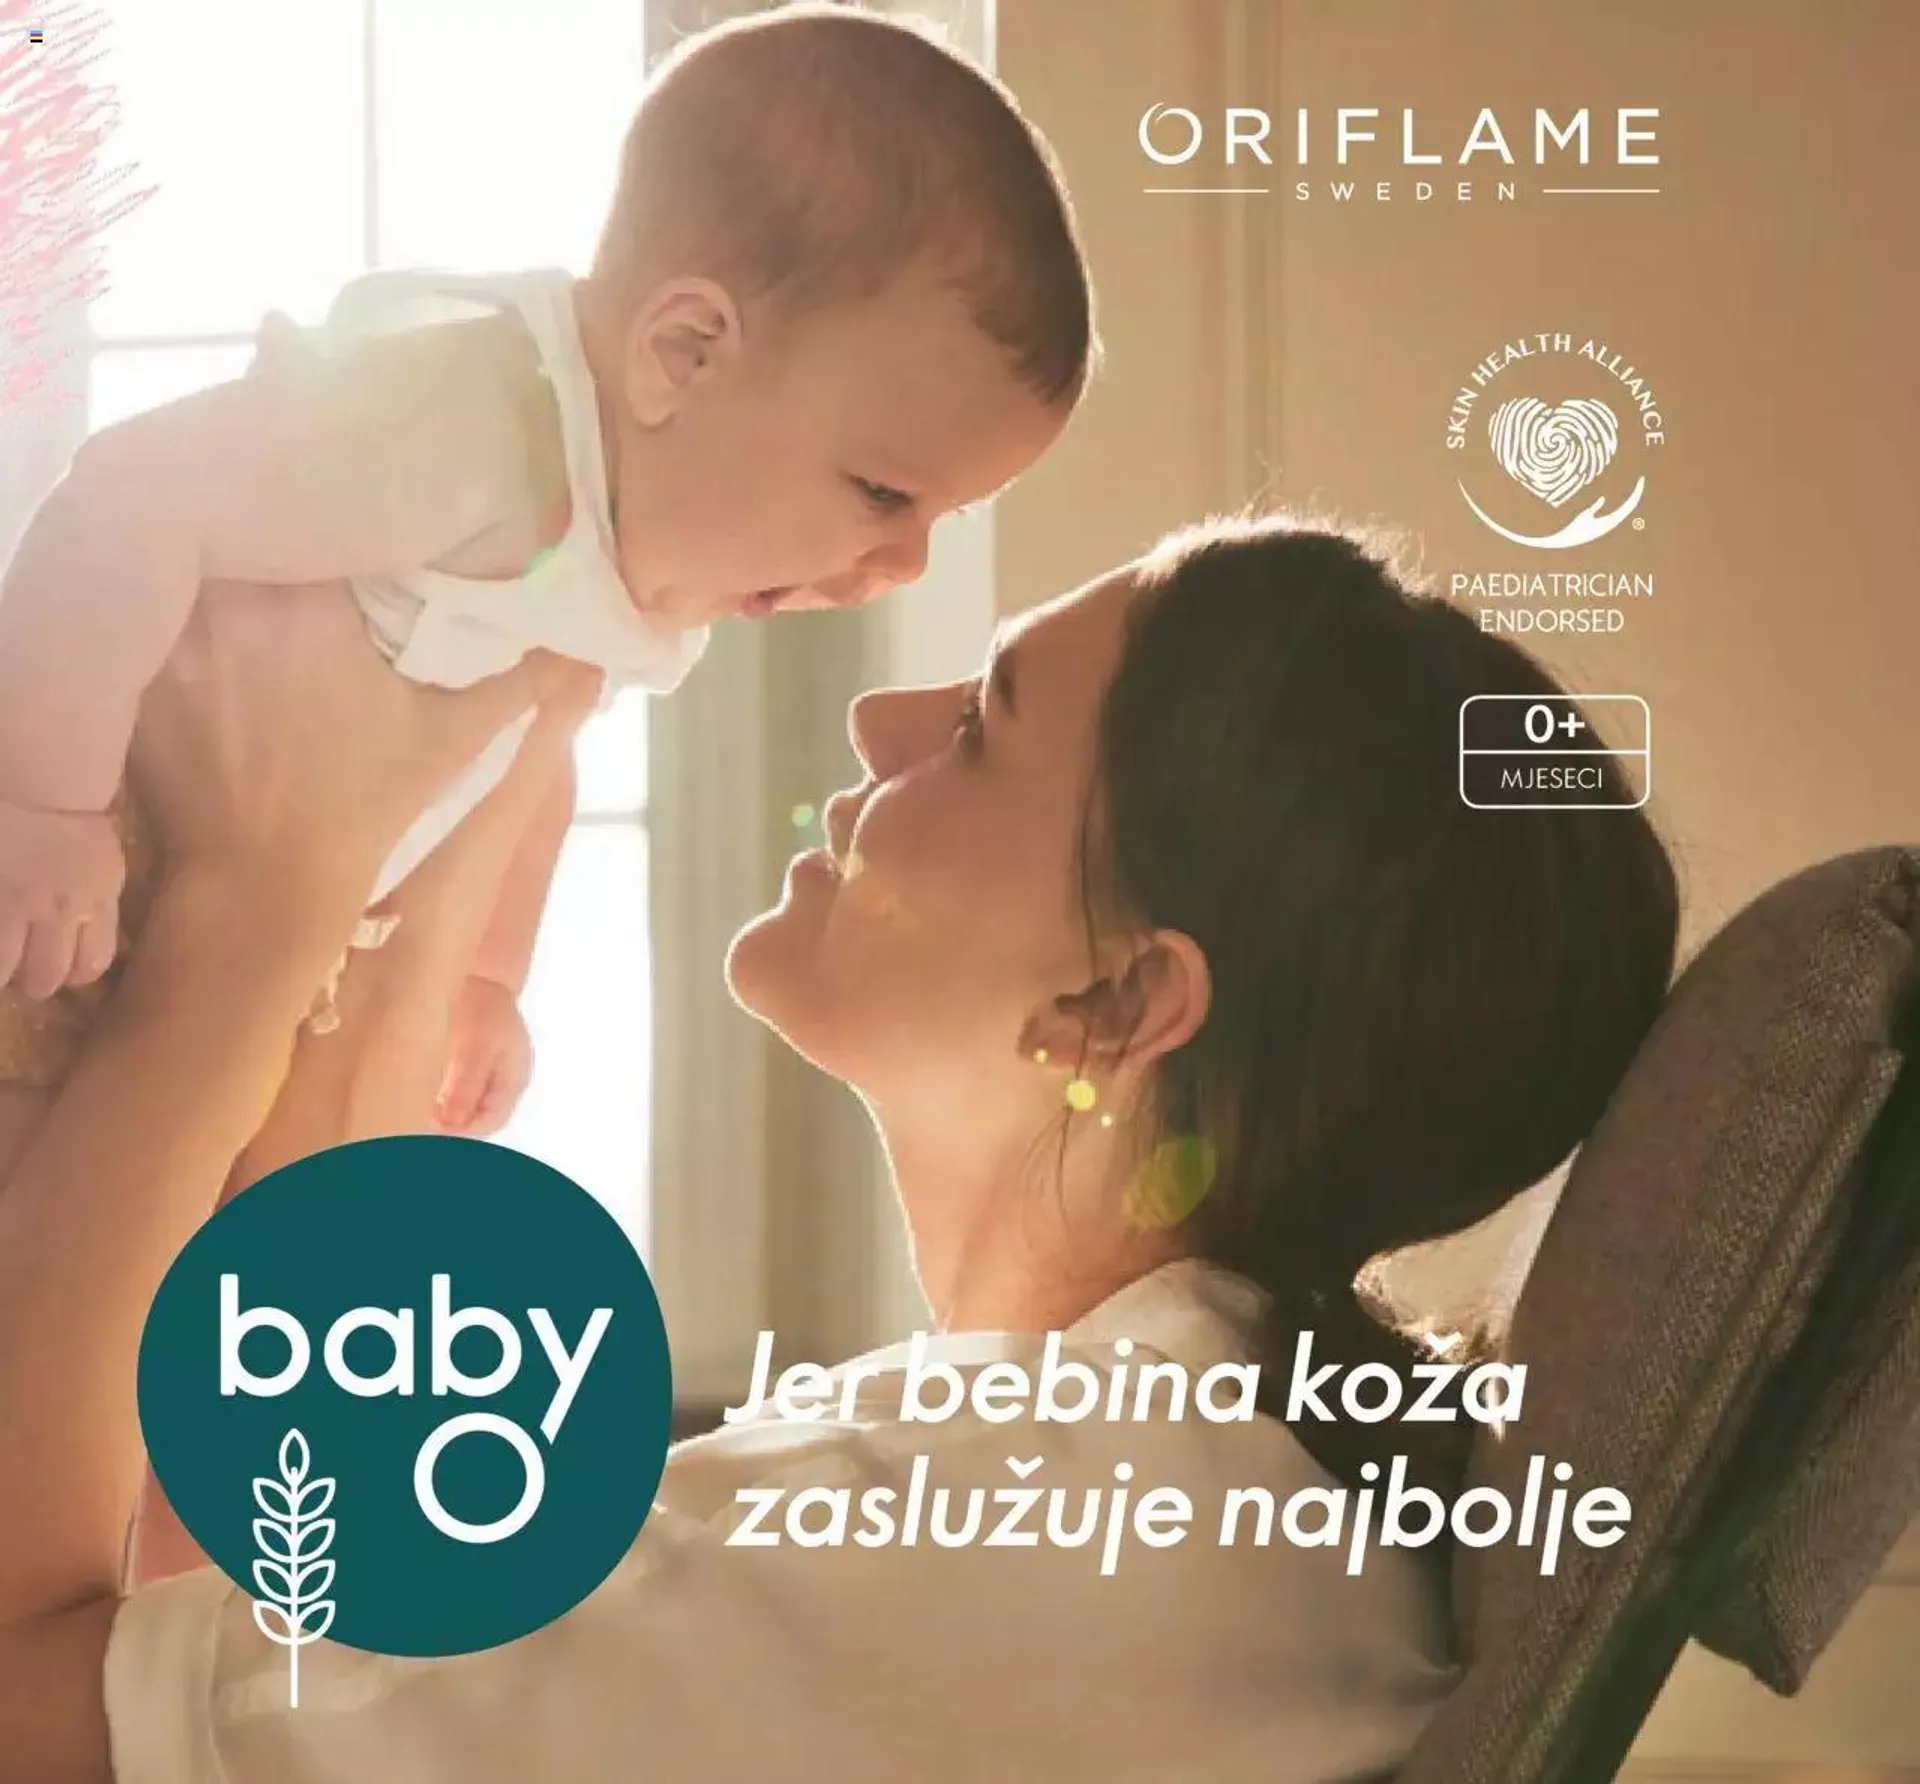 Oriflame katalog - Baby O - 0